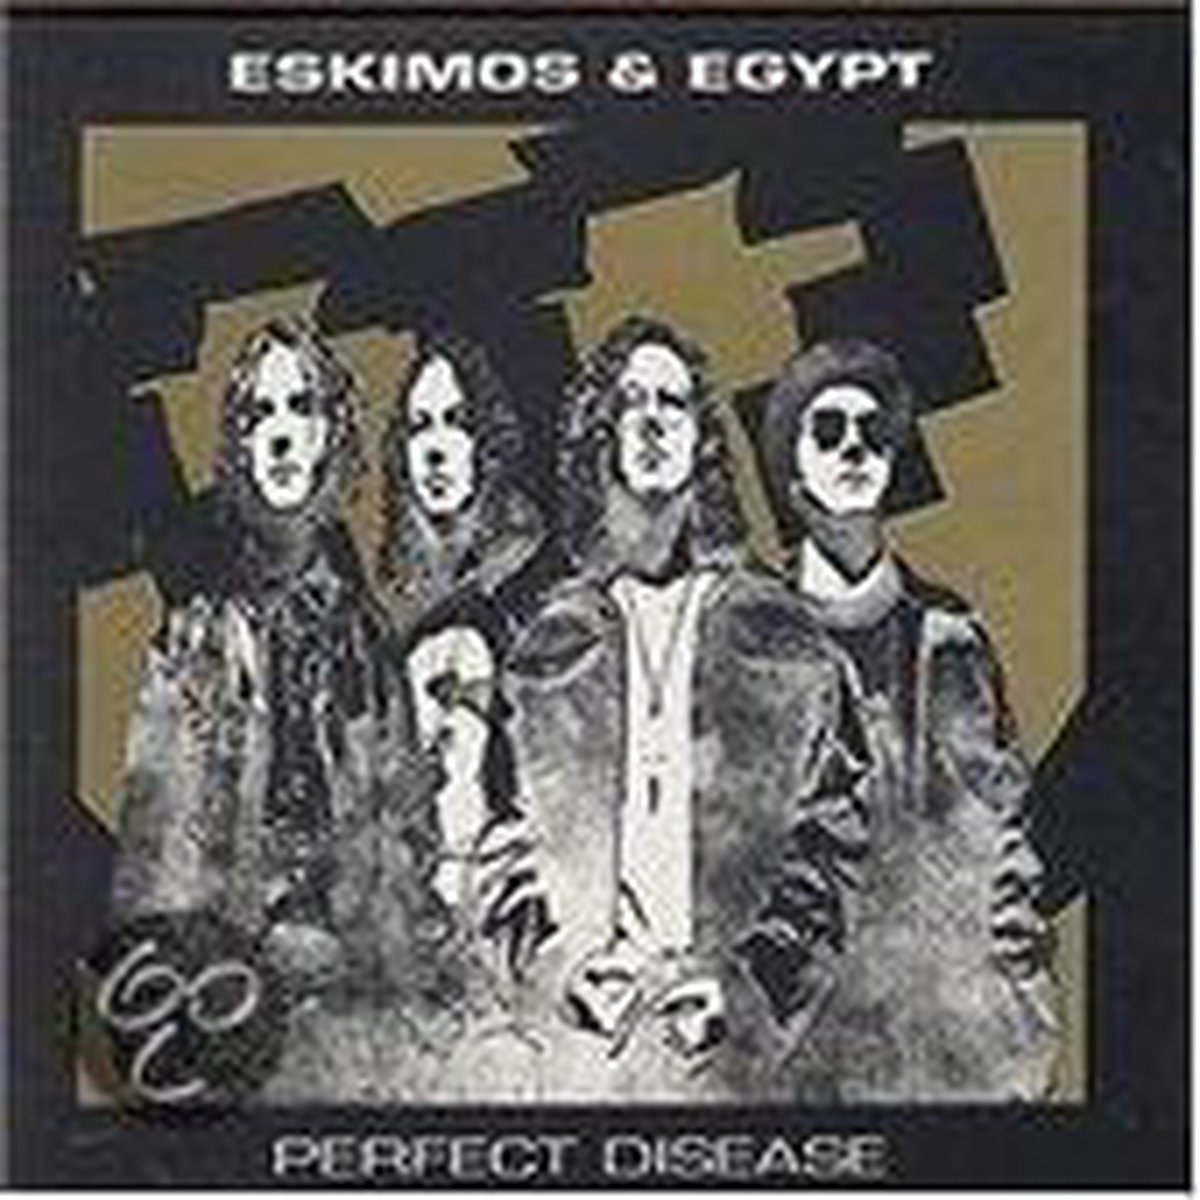 Perfect Disease - Eskimos & Egypt